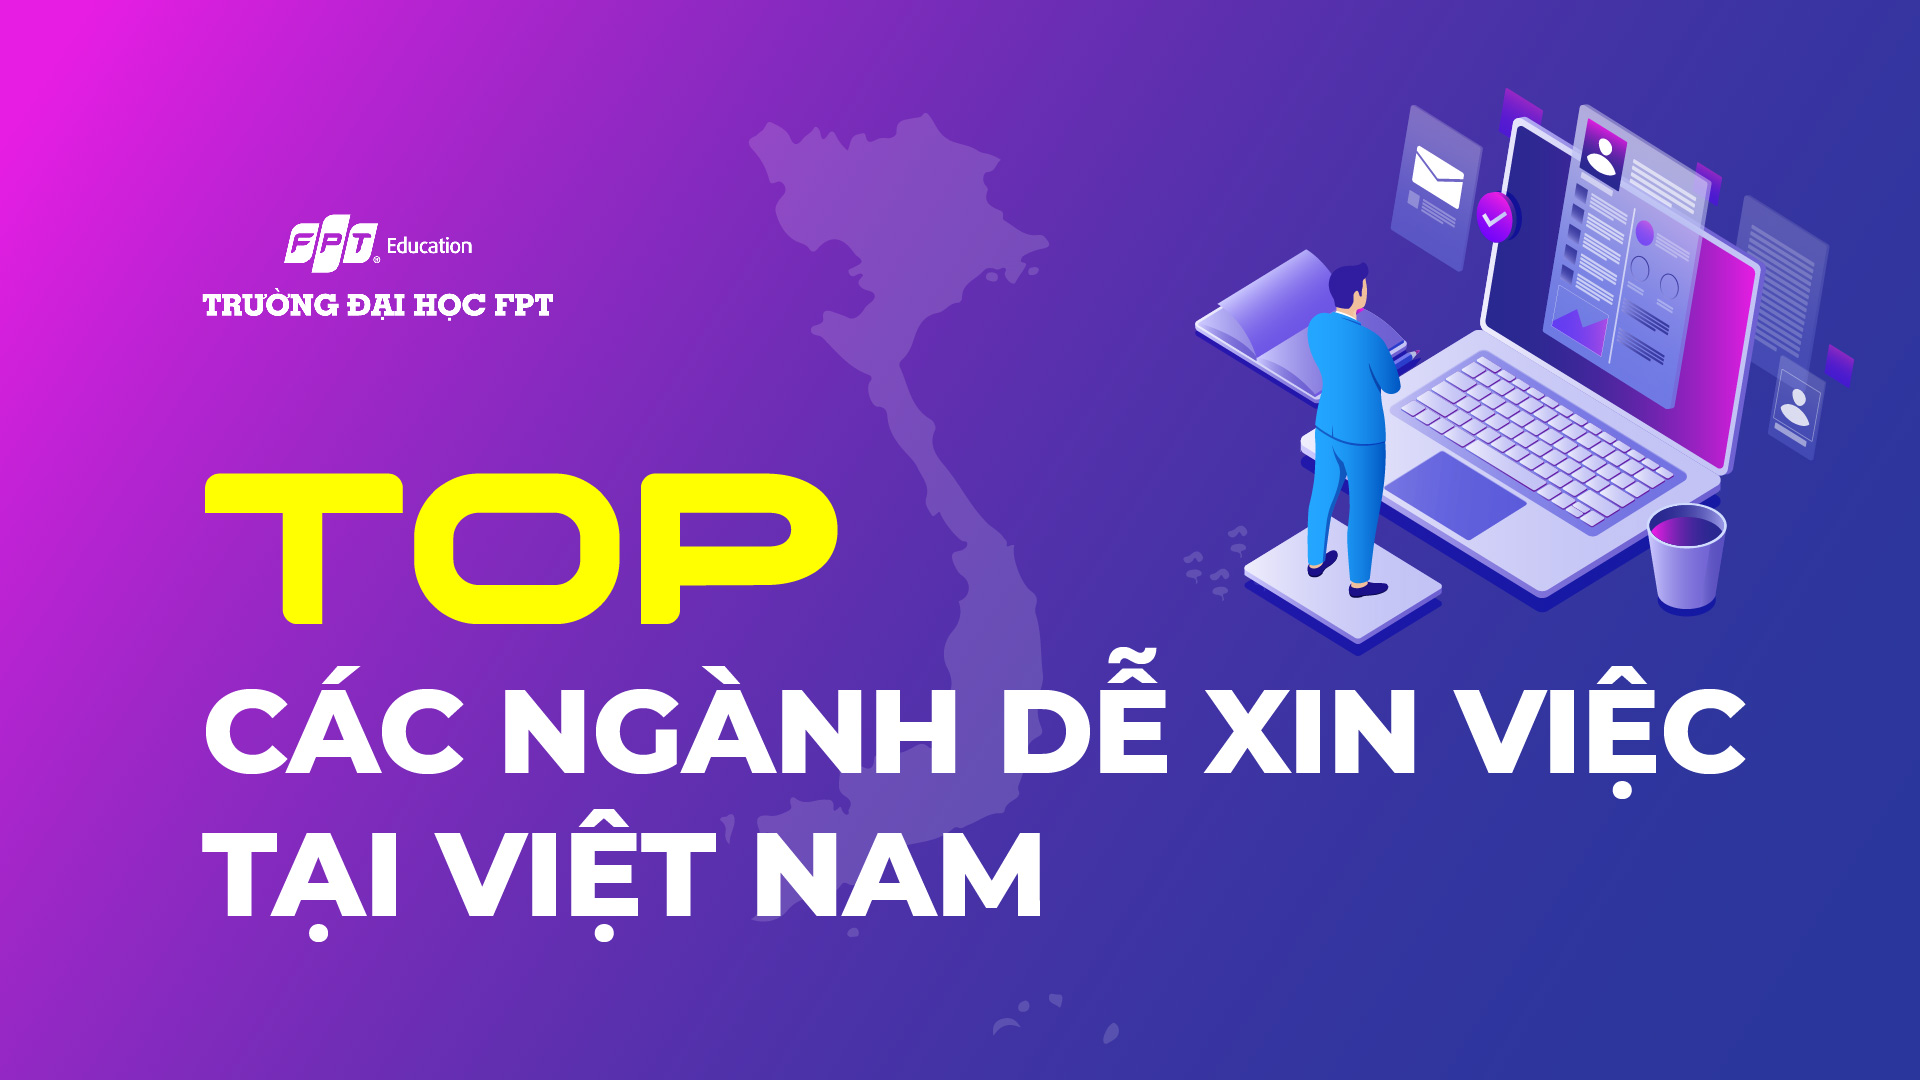 Top 10 các ngành dễ xin việc tại Việt Nam hiện nay